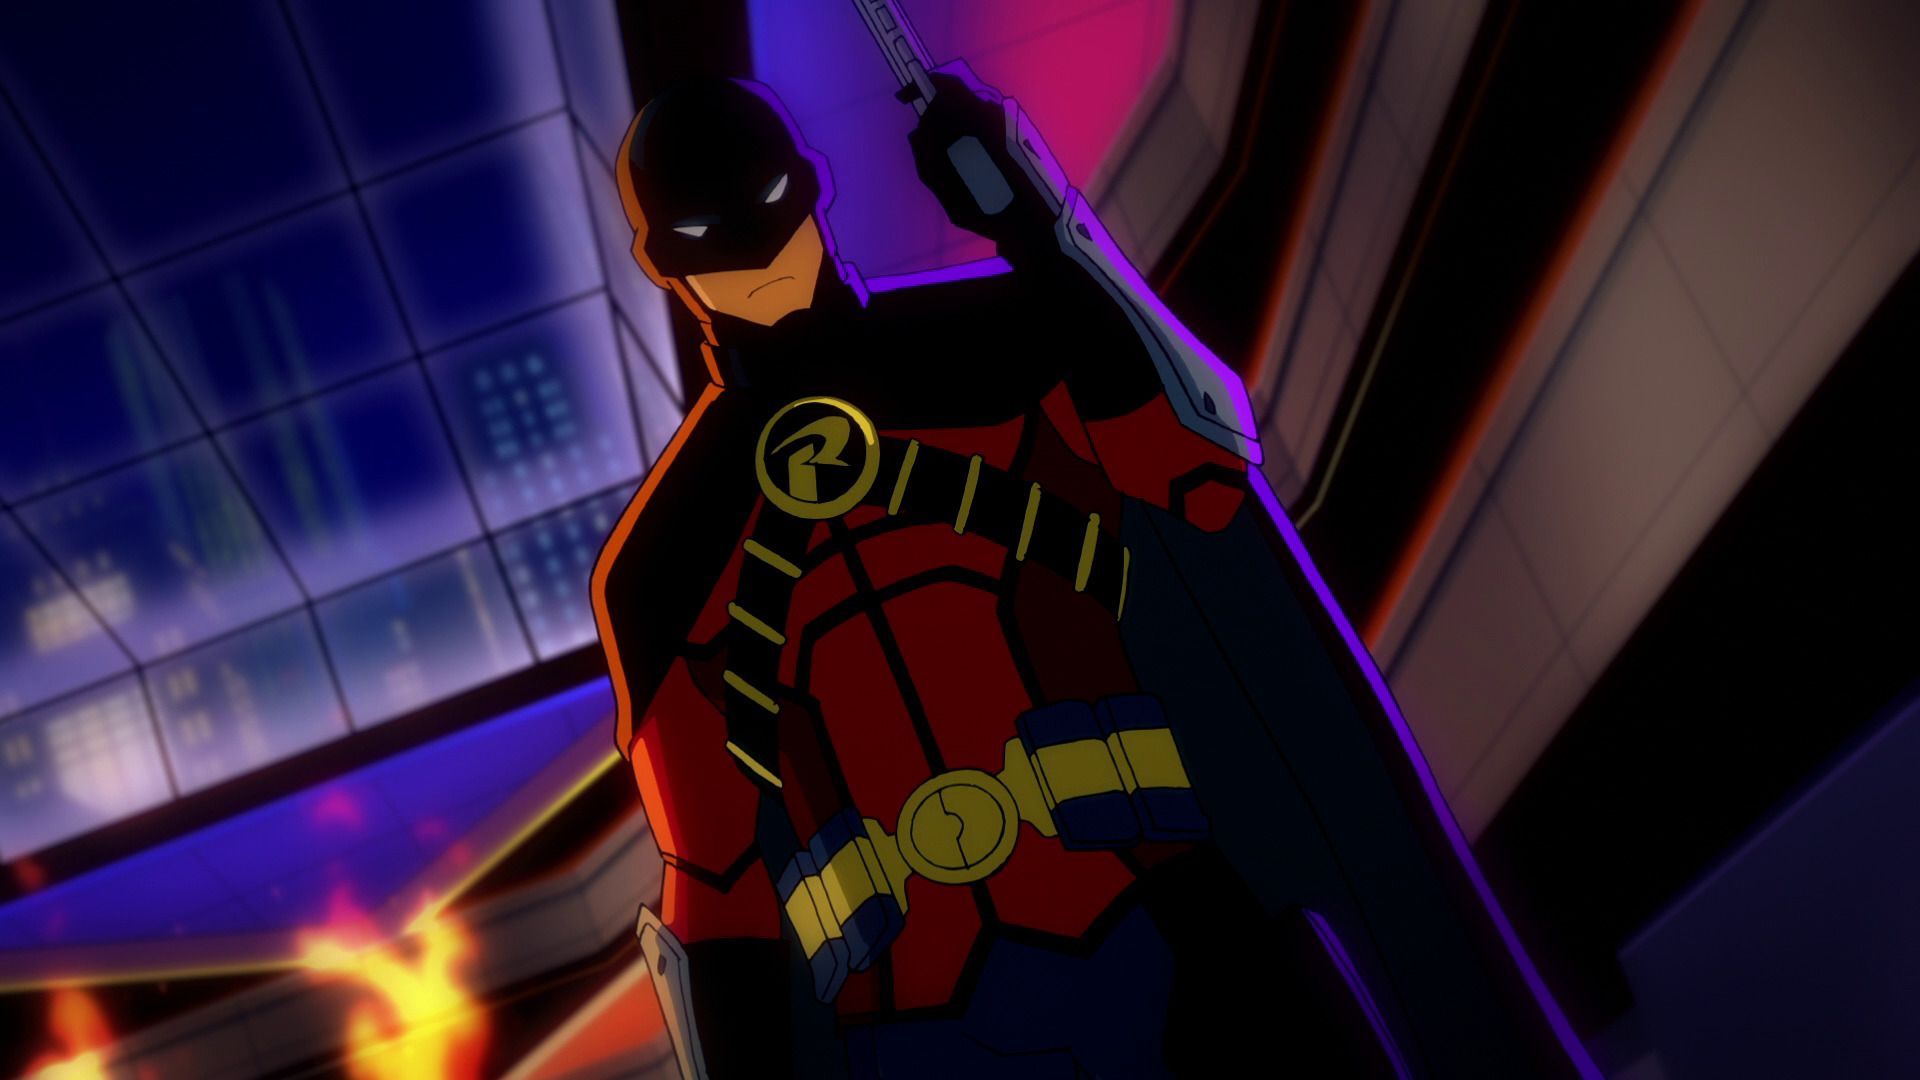 Скачать обои бесплатно Кино, Бэтмен, Комиксы Dc, Красный Робин, Джейсон Тодд, Бэтмен: Смерть В Семье картинка на рабочий стол ПК